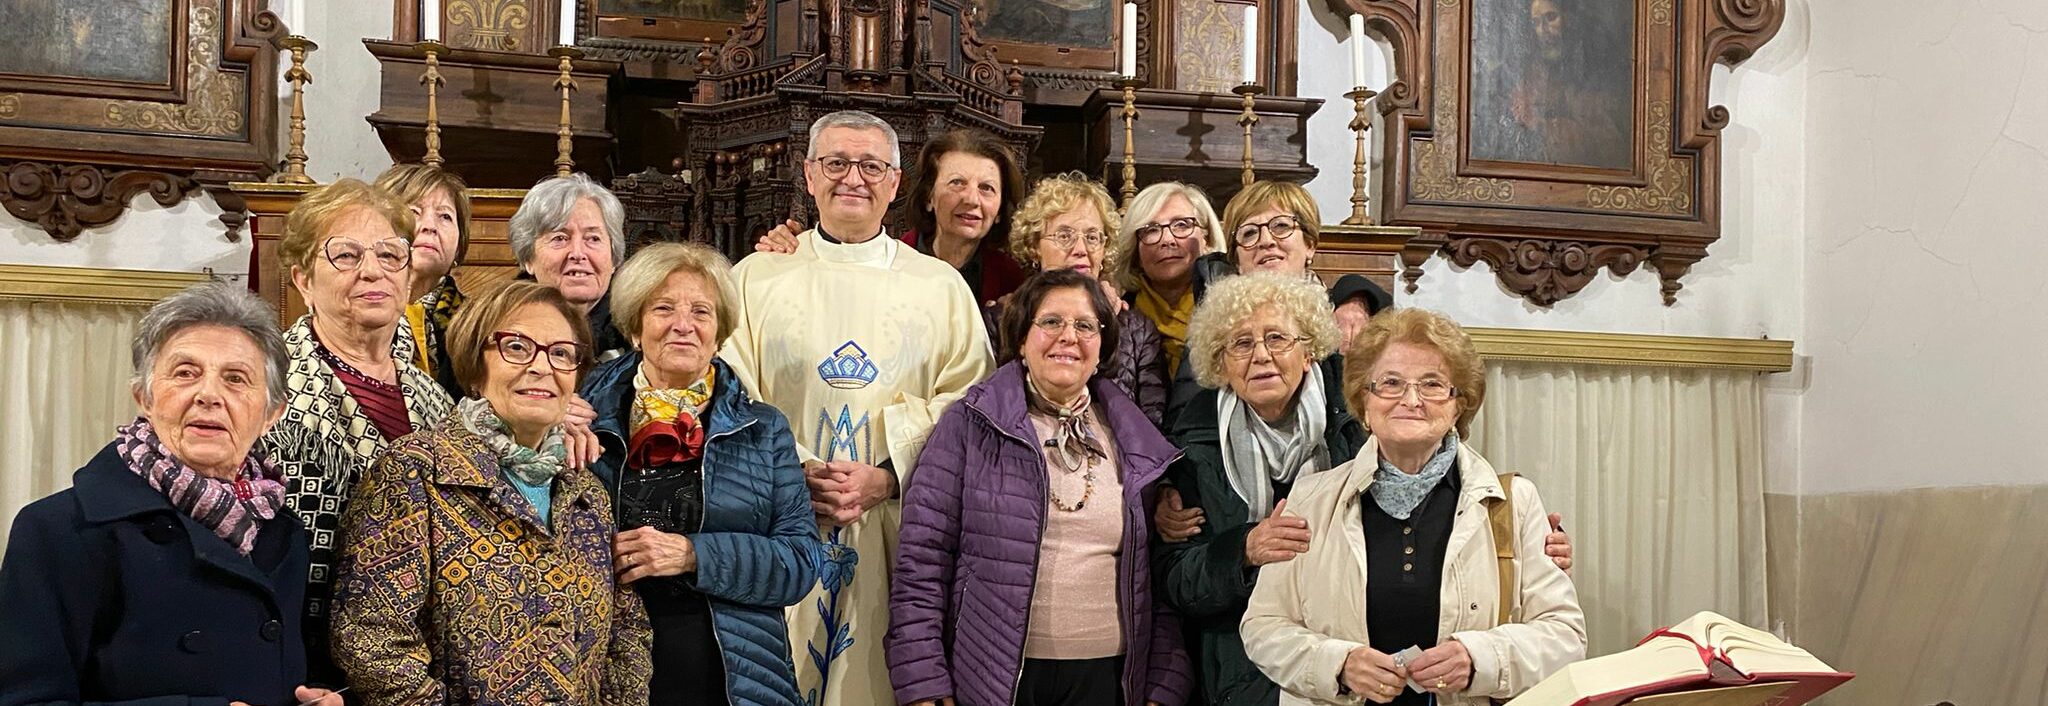 Festa della Madonna della Medaglia Miracolosa con i volontari Vincenziani di Avola. Don Sultana: "non abbiate paura!"